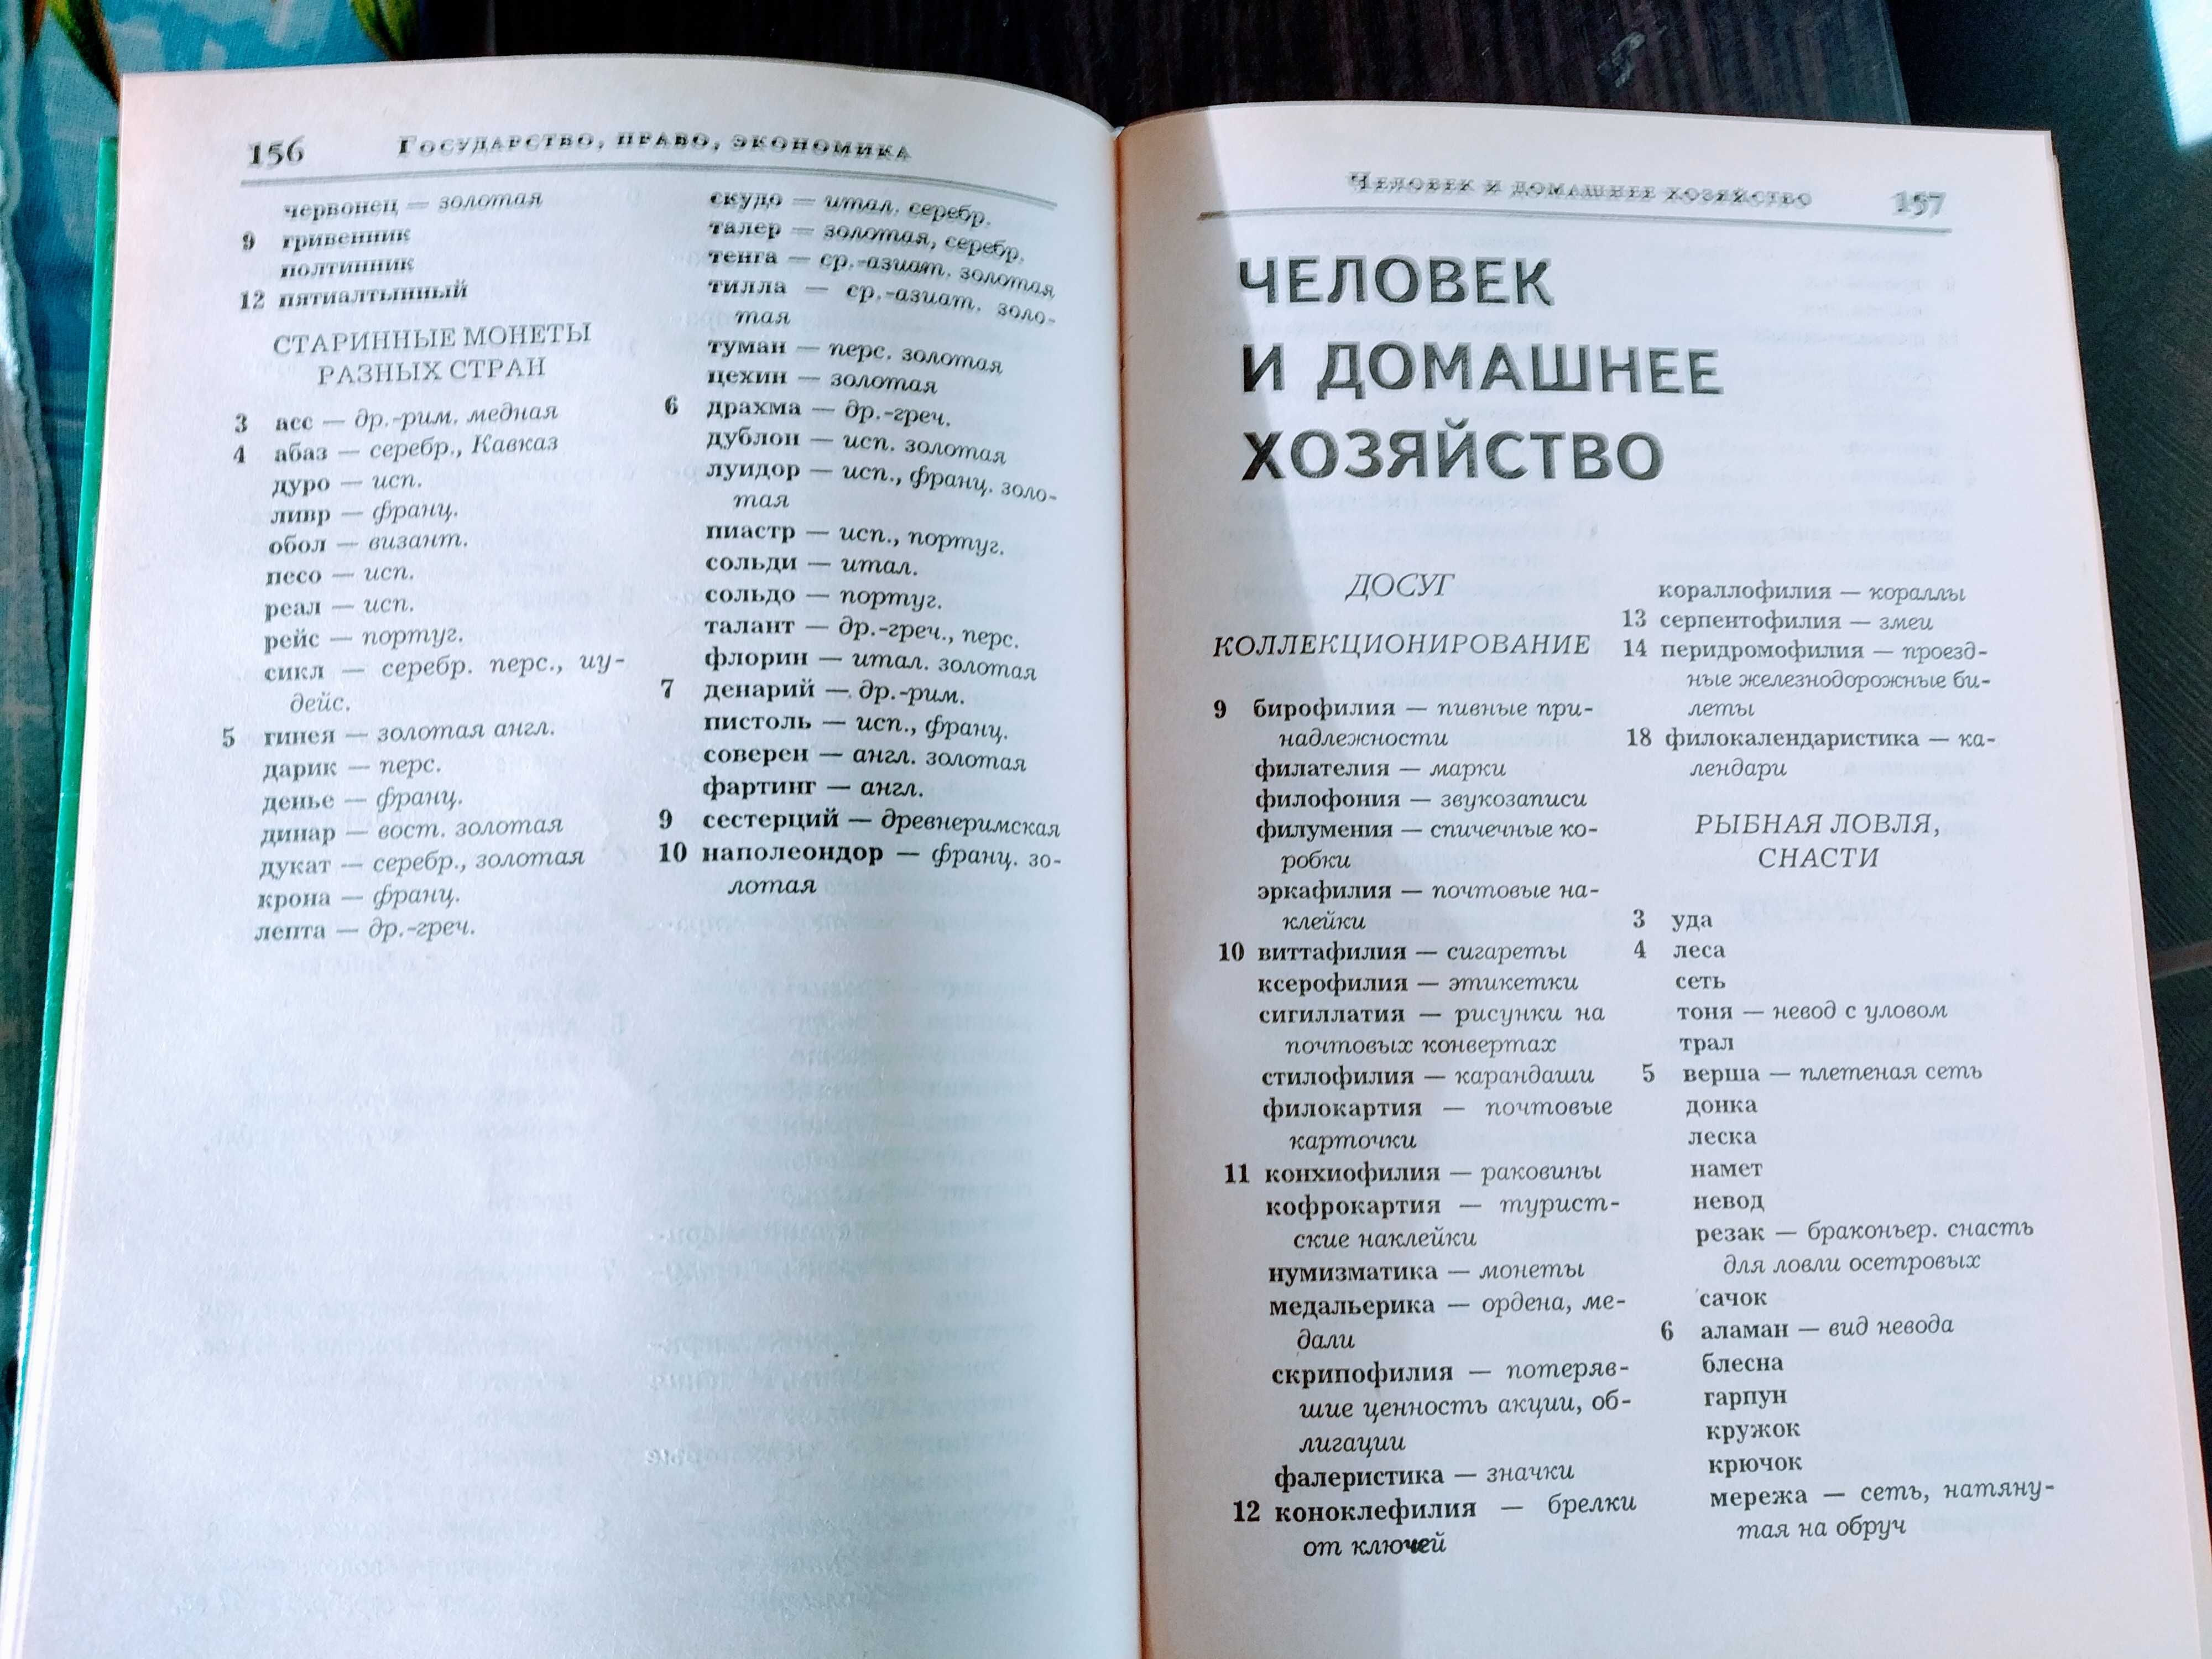 Большой словарь - справочник для решения и составления кроссвордов